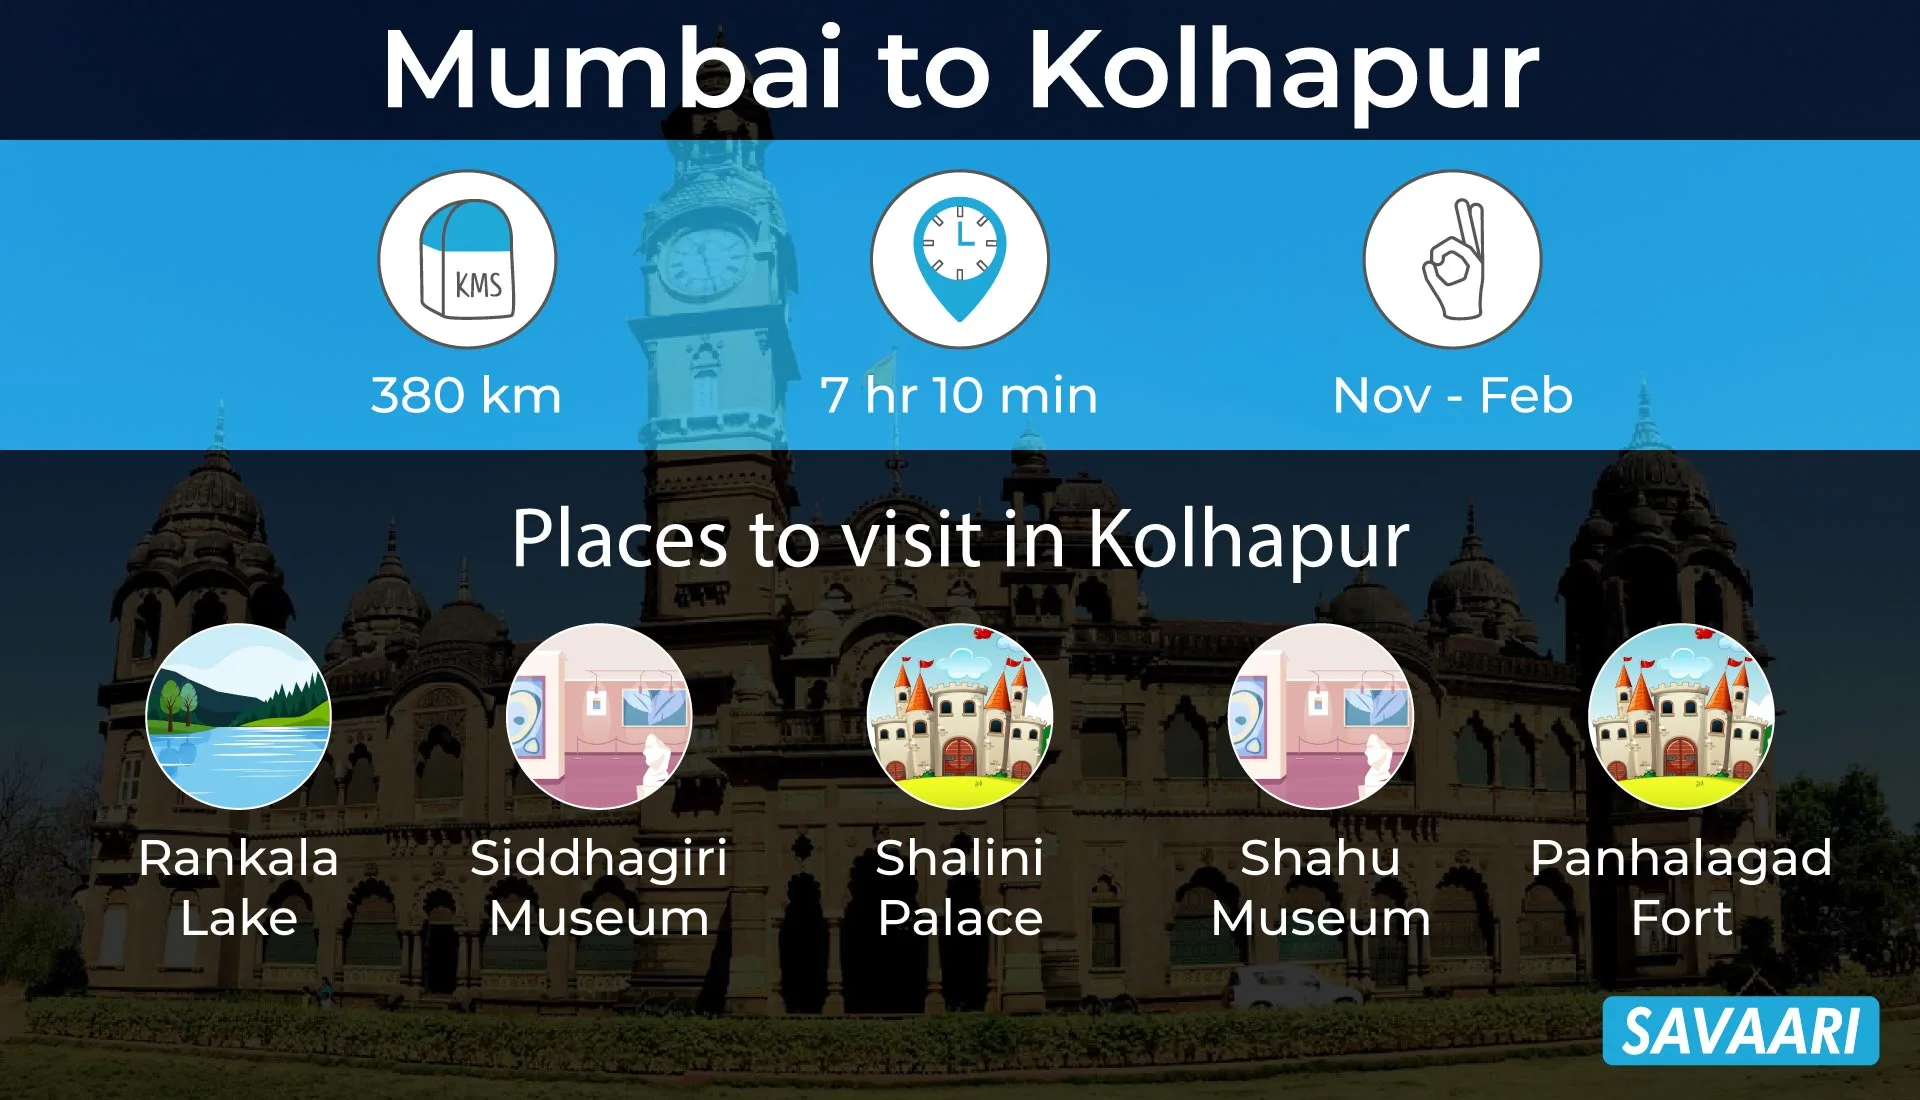 Road trip places near mumbai- Kolhapur